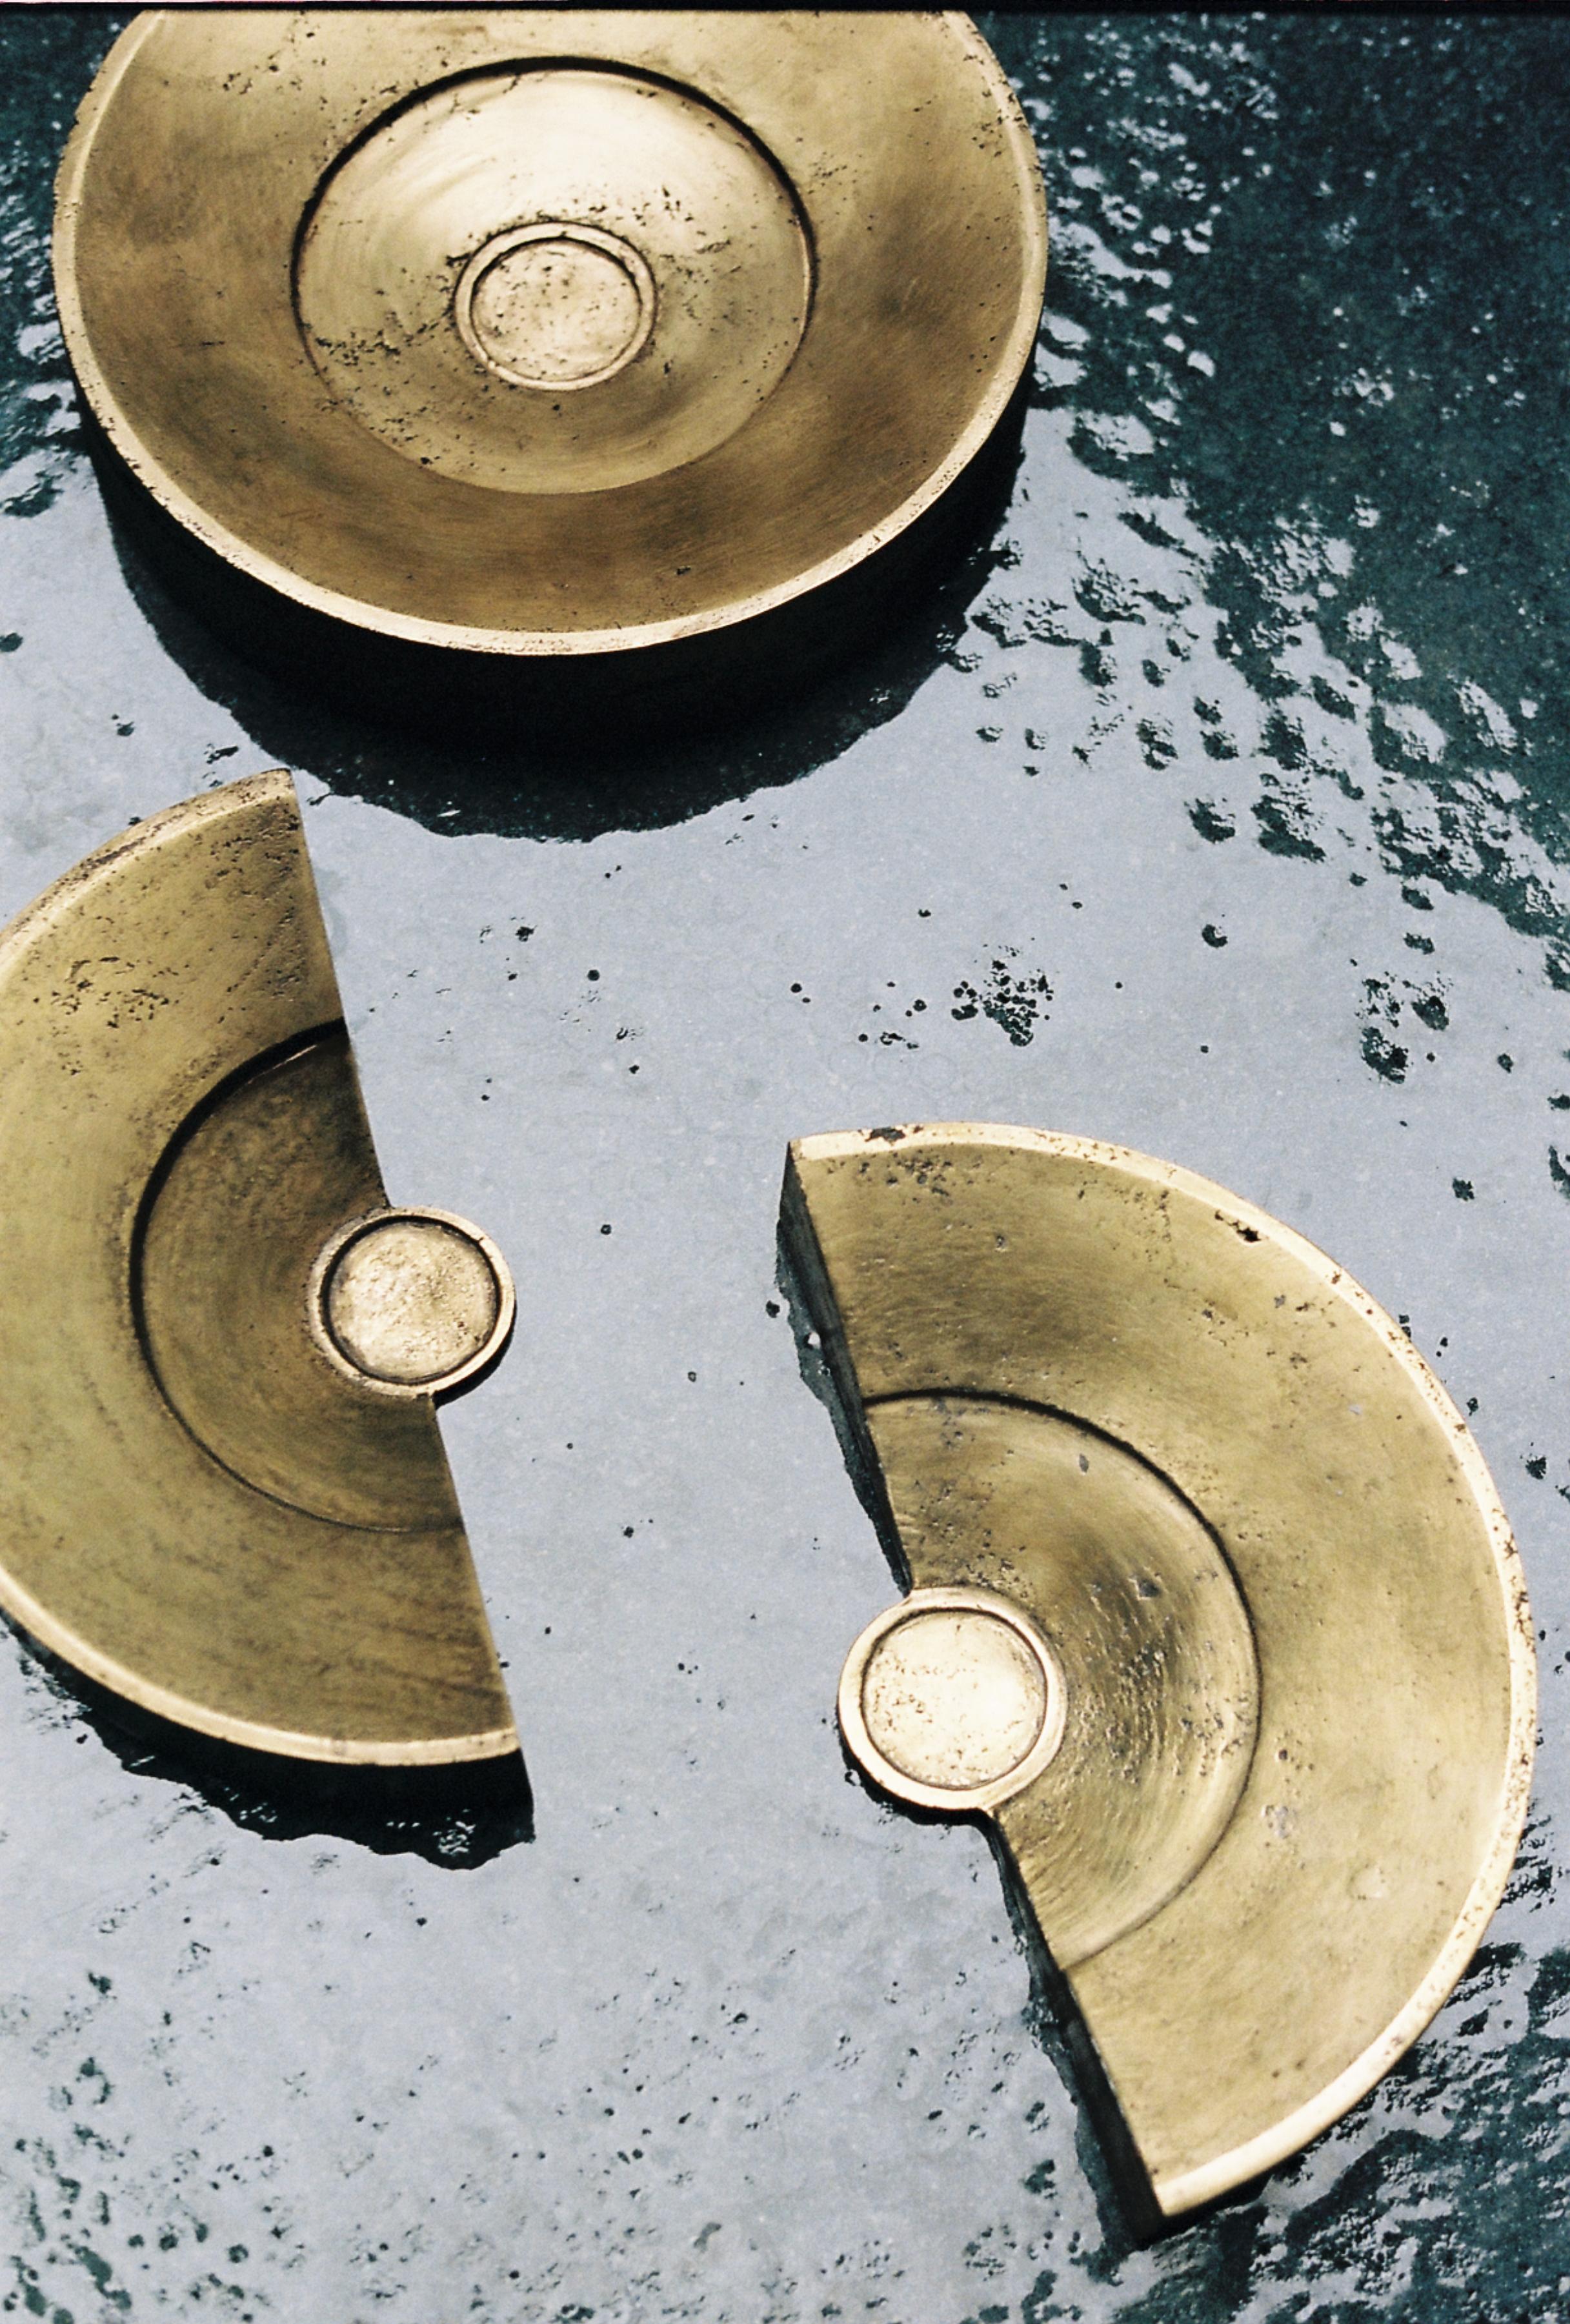 Cenote Objekt von C. Nuñez Hand patinierte Bronze gegossen
27,5D x 5,5H cm
10.8D x 2.1H in
DERZEIT AUF LAGER

Formal inspiriert durch das vorspanische Ballspiel
Die Cenote repräsentiert mit ihrer reinen Materialität die alte mesoamerikanische